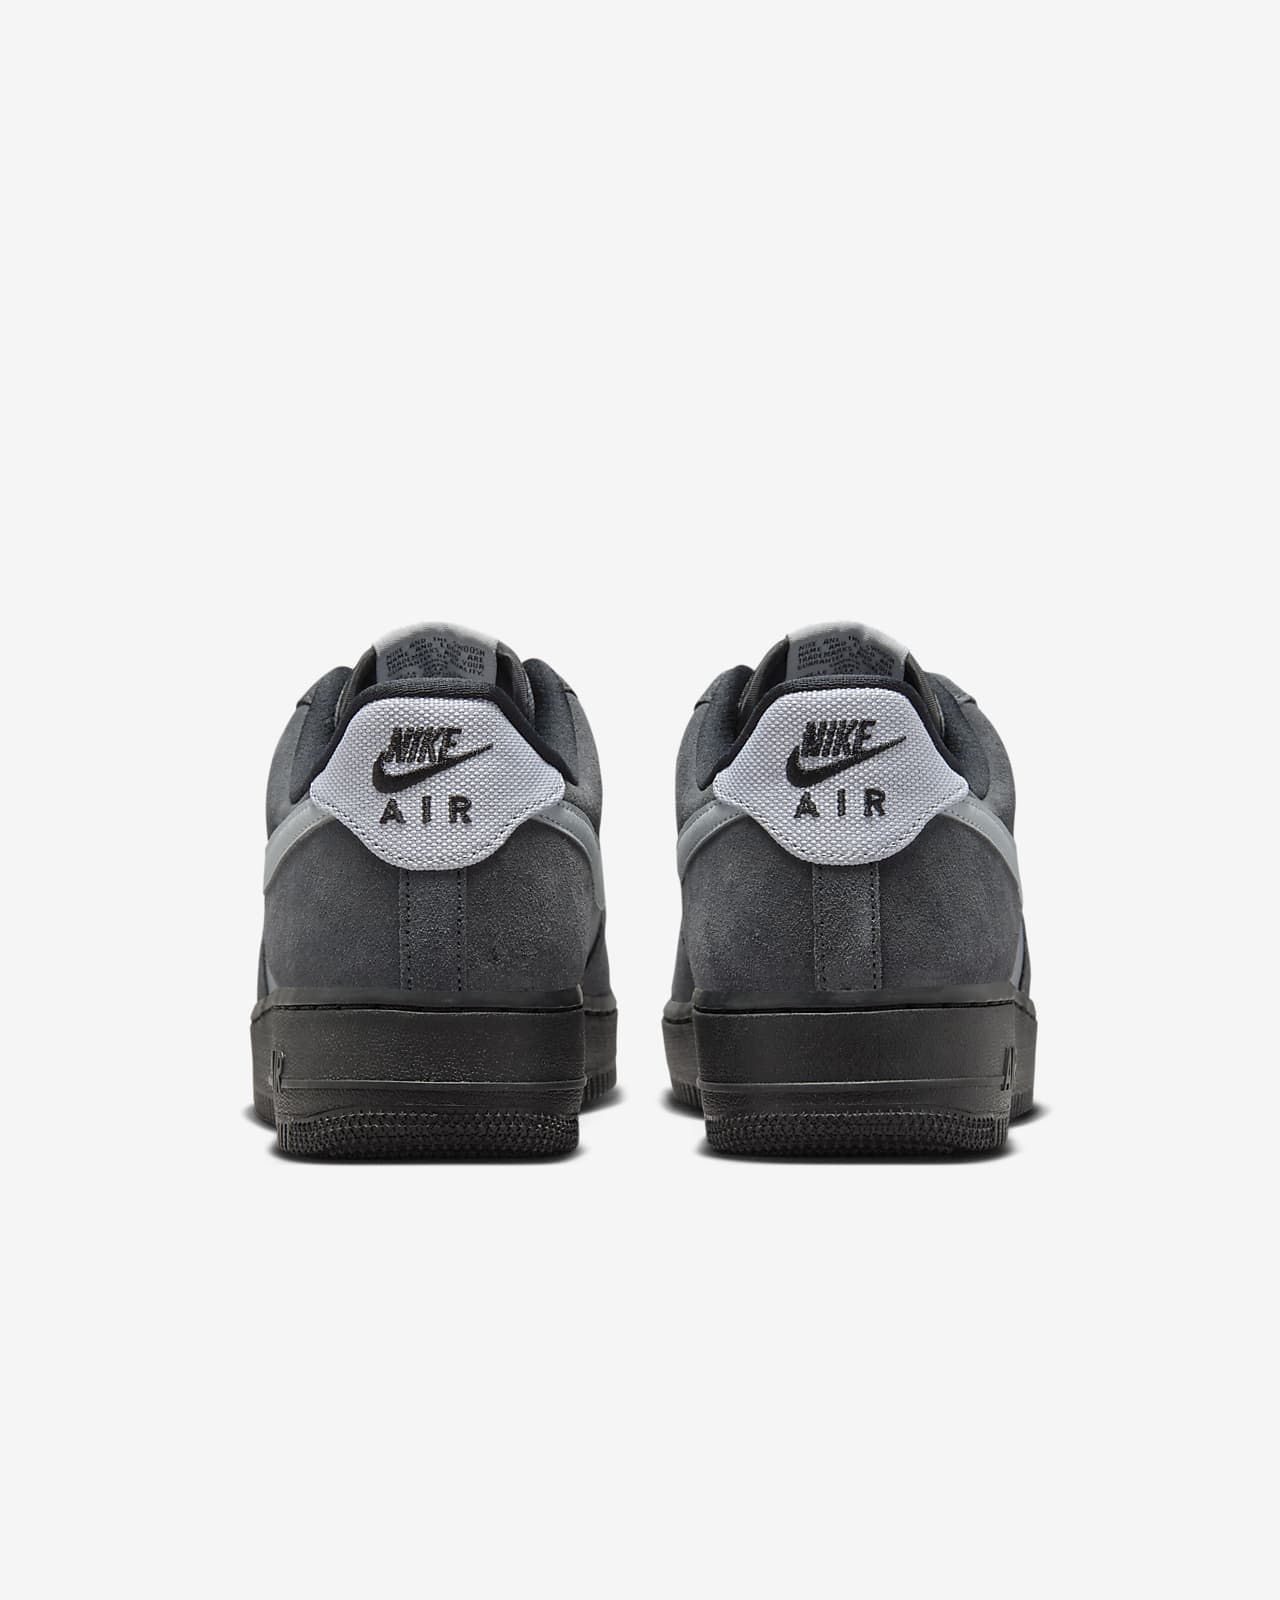 Nike Air Force 1 Low '07 LV8 'Triple Grey' | Men's Size 11.5